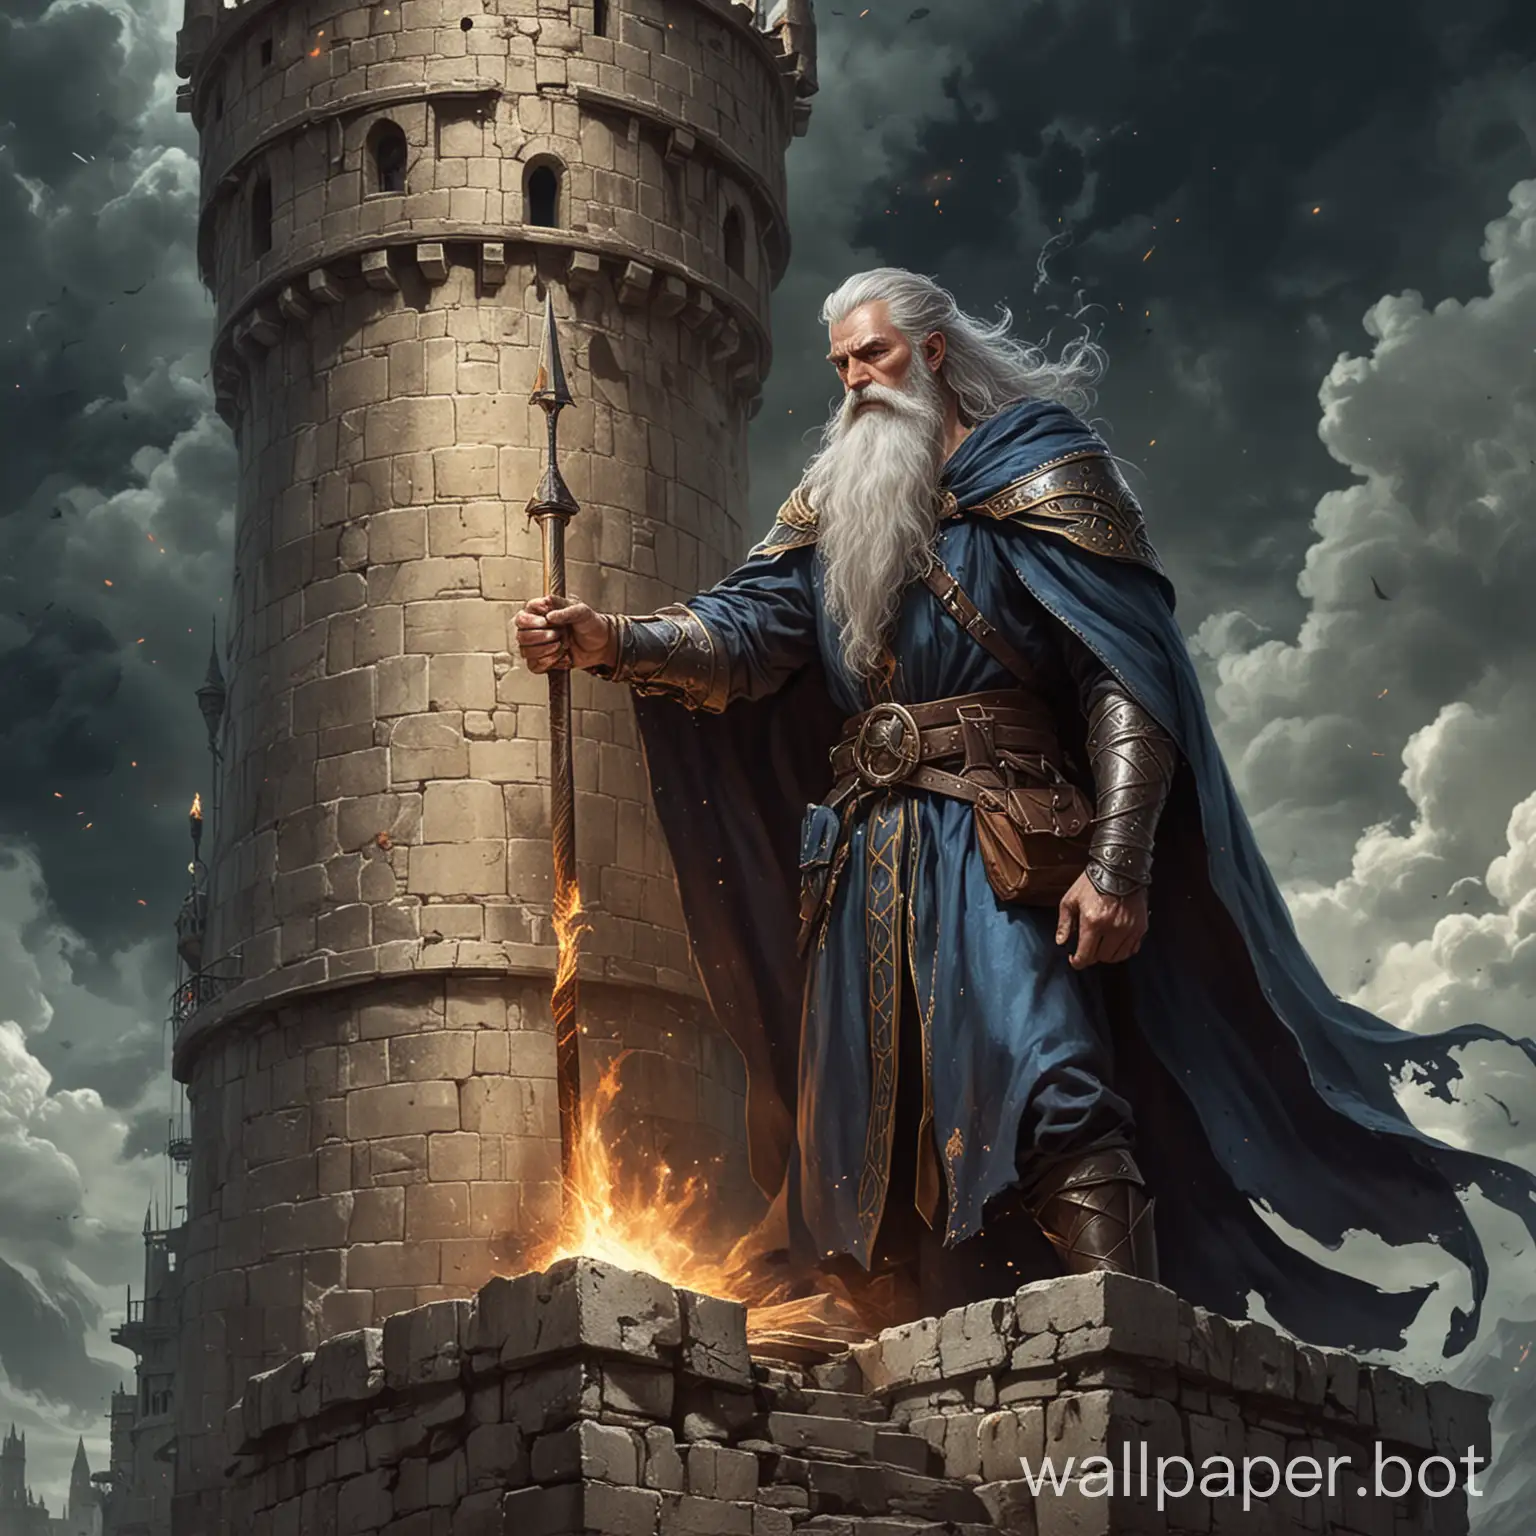 нарисуй фэнтези мага мужчину, который обладает очень сильной магией, в башне, к которому пришёл король
